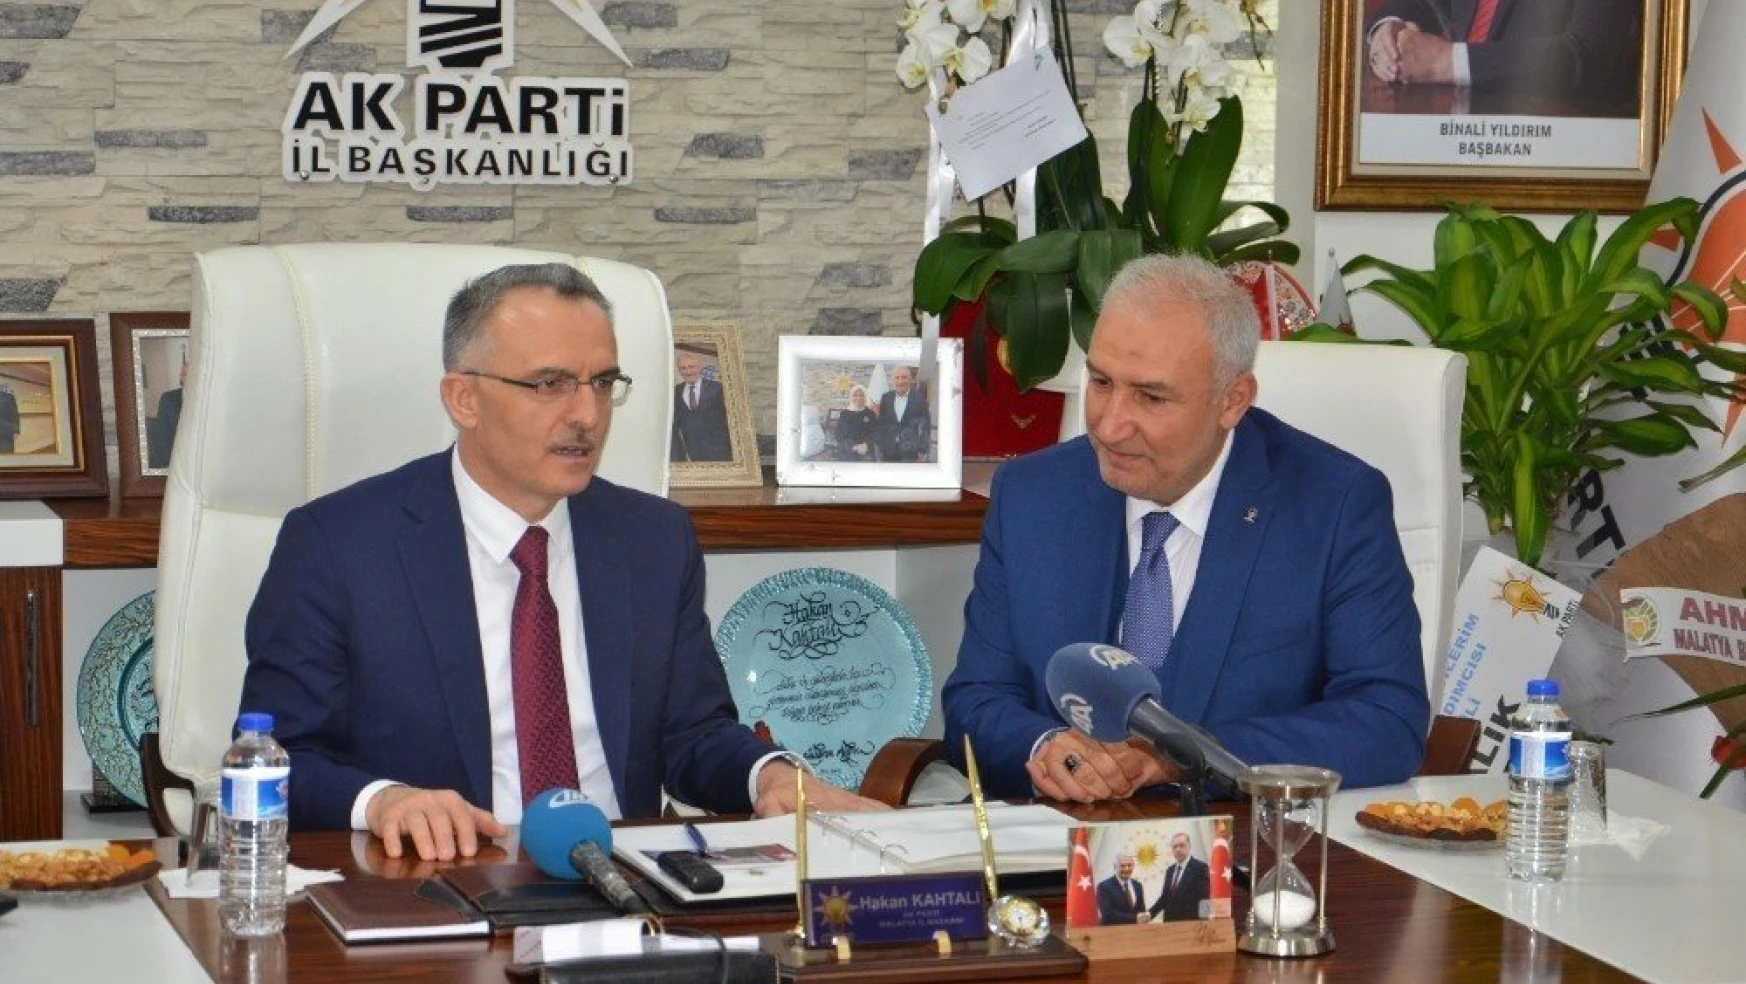 Maliye Bakanı Ağbal'ın Malatya'daki son durağı AK Parti oldu
